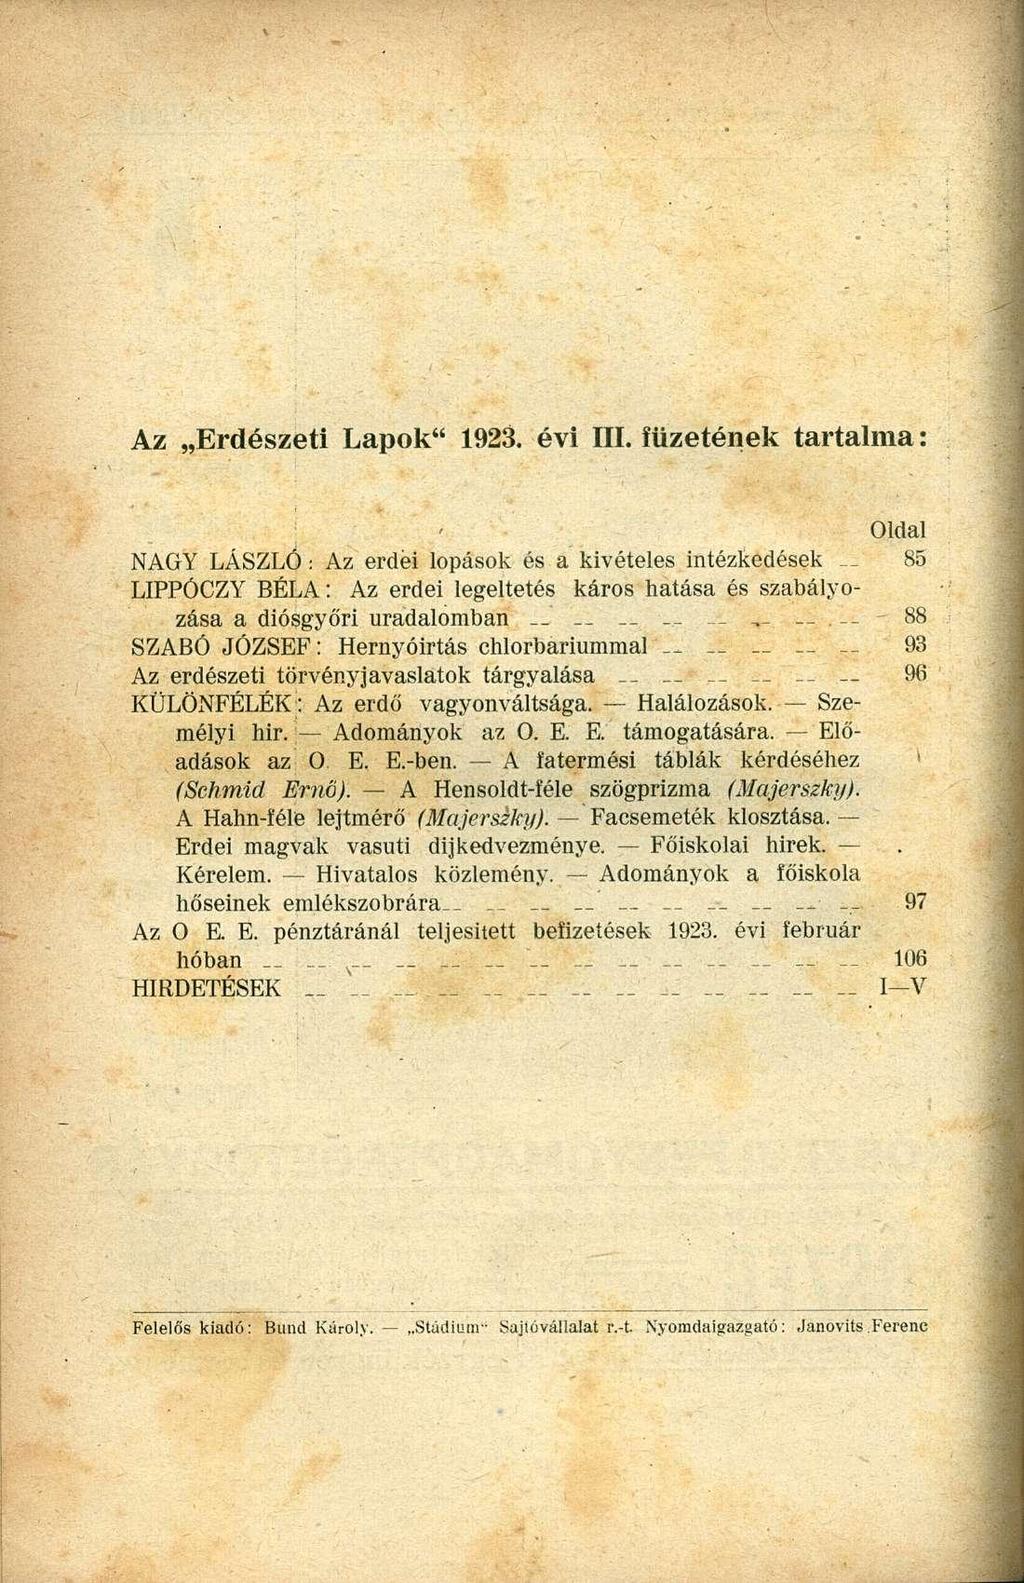 Az Erdészeti Lapok" 1923. évi III.